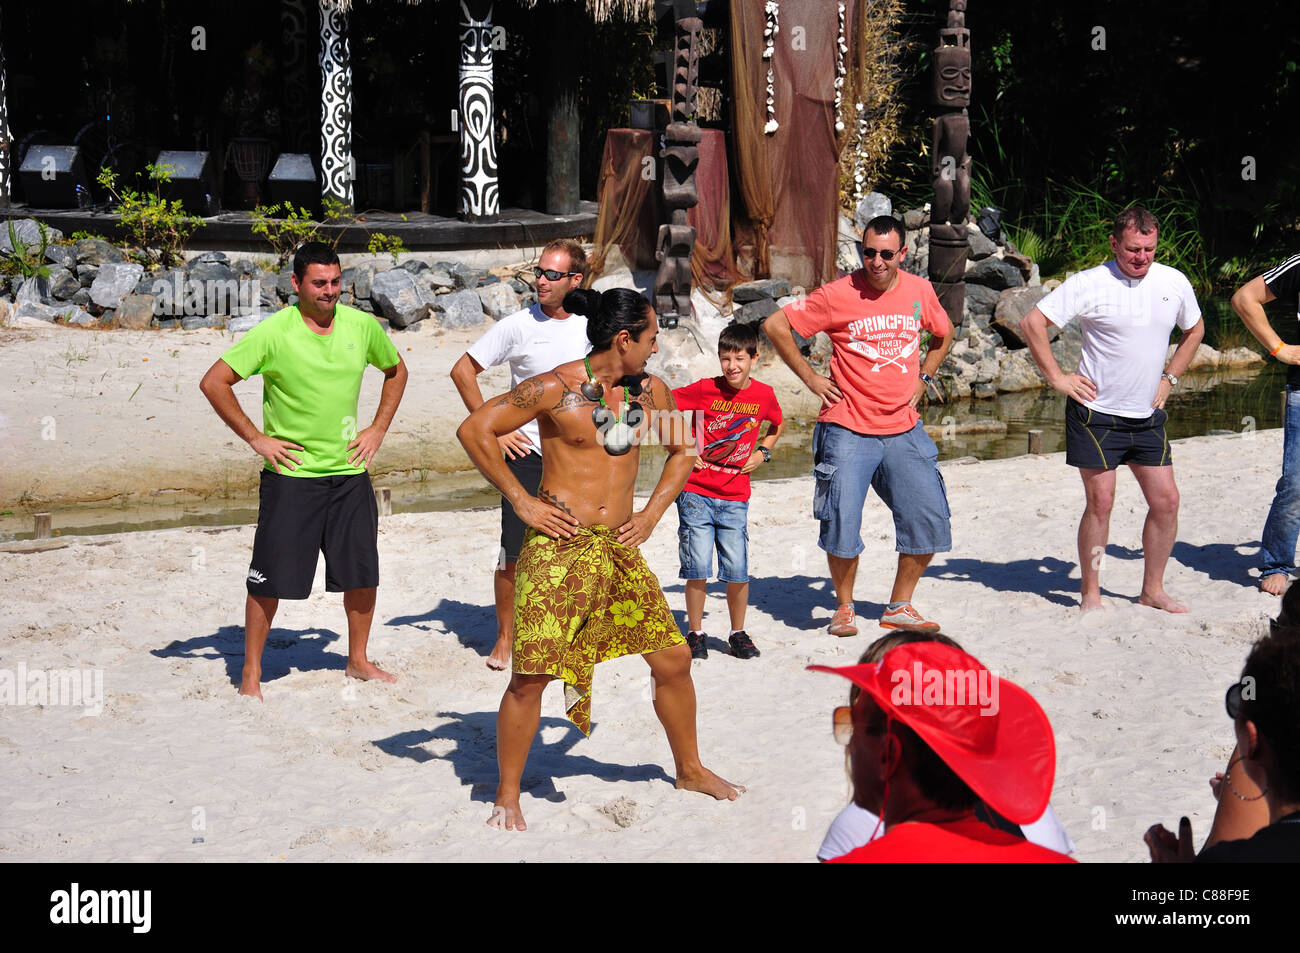 Touristen, die tanzen in der polynesischen zeigen, Themenpark PortAventura, Salou, Costa Daurada, Provinz Tarragona, Katalonien, Spanien Stockfoto